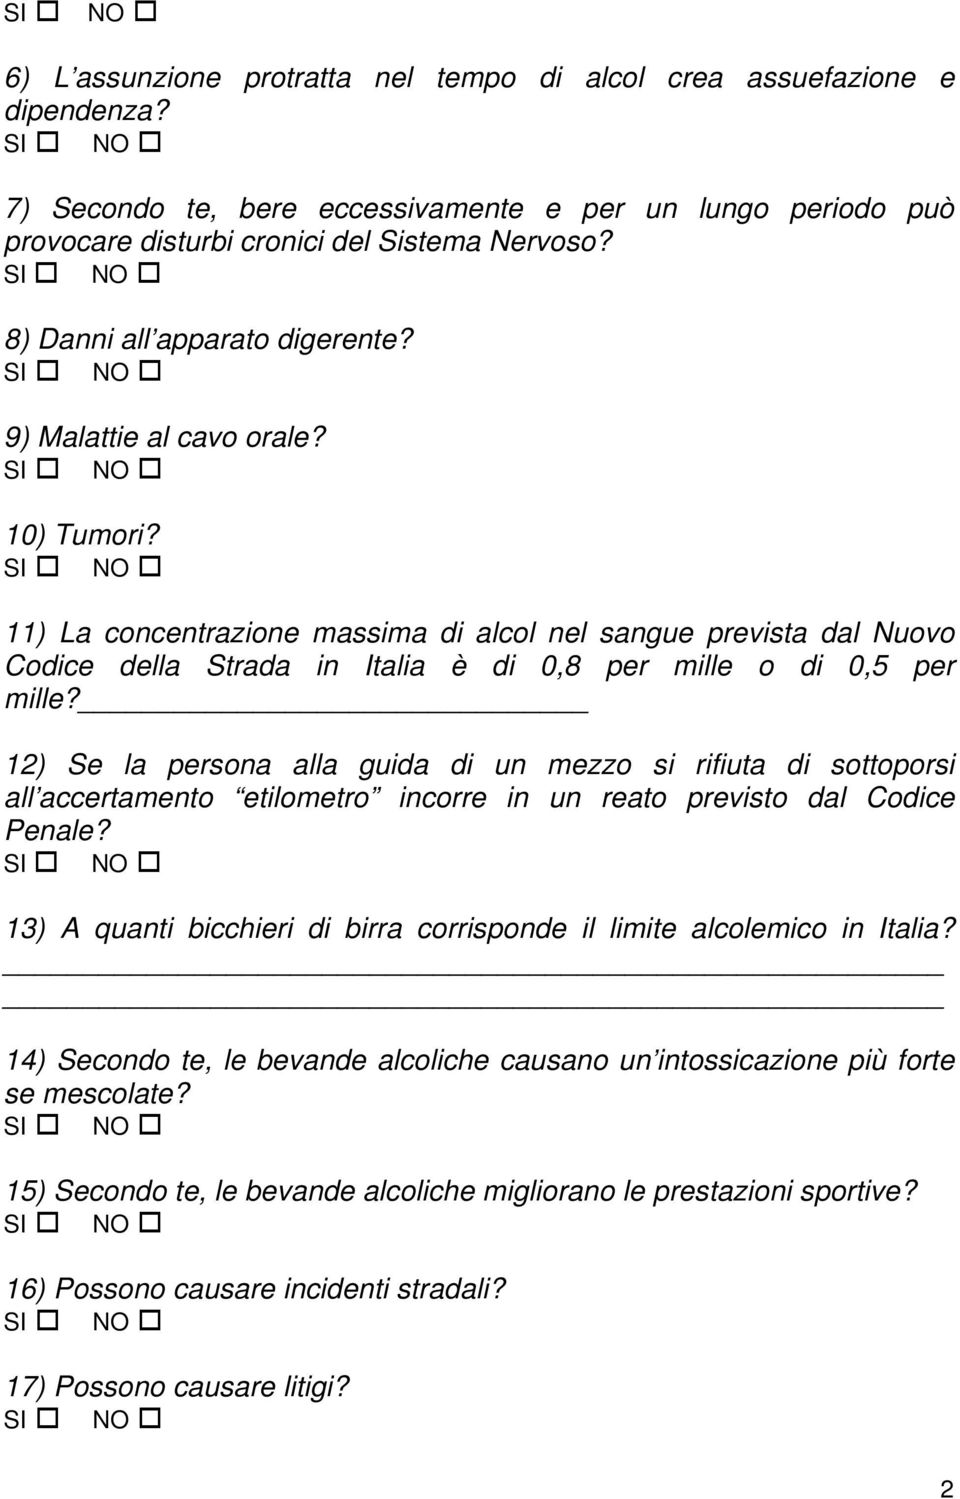 11) La concentrazione massima di alcol nel sangue prevista dal Nuovo Codice della Strada in Italia è di 0,8 per mille o di 0,5 per mille?